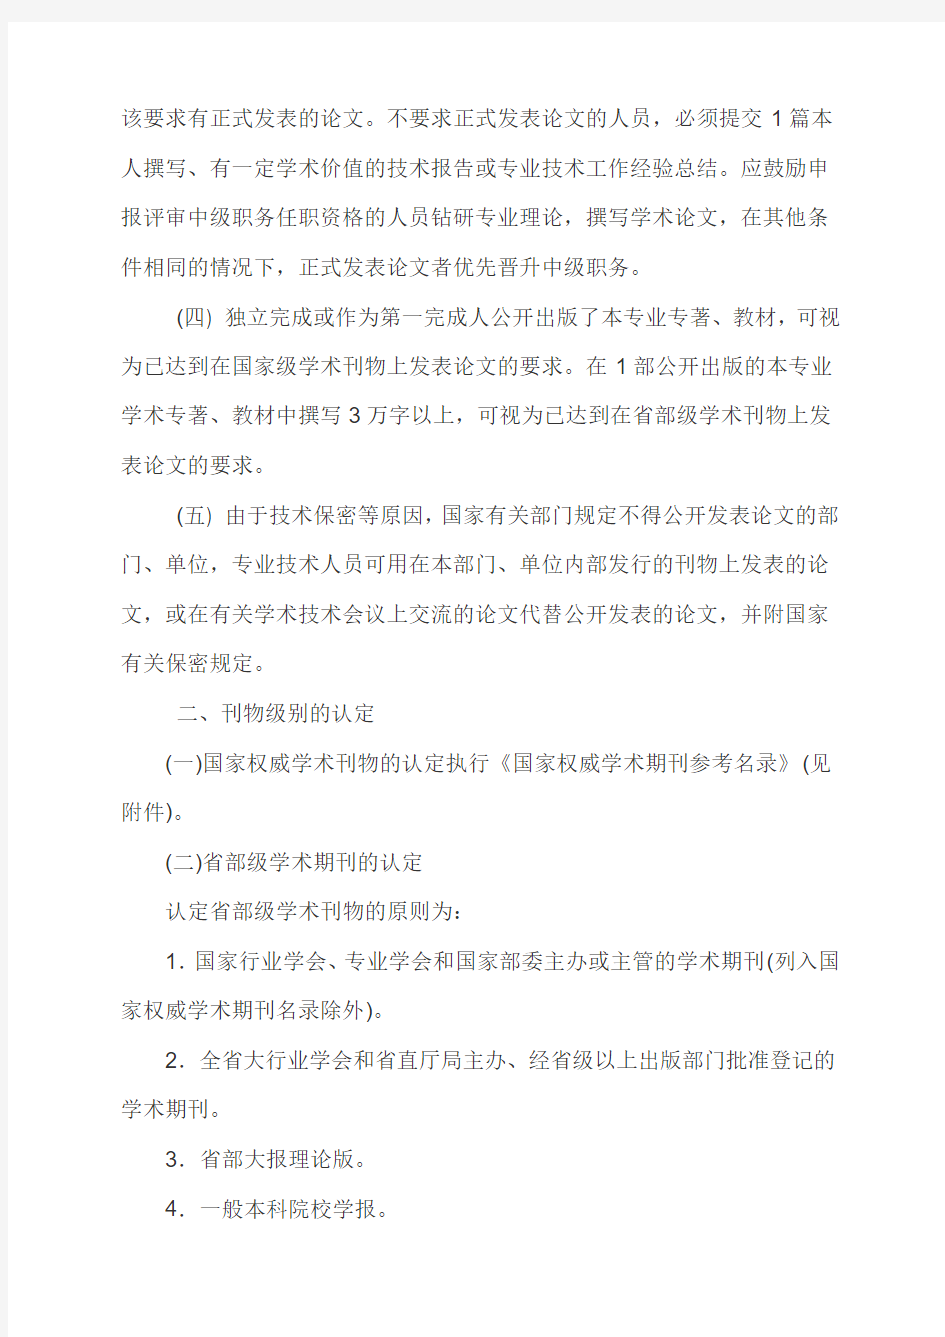 甘肃职称评定中论文要求及刊物级别认定办法-人事处